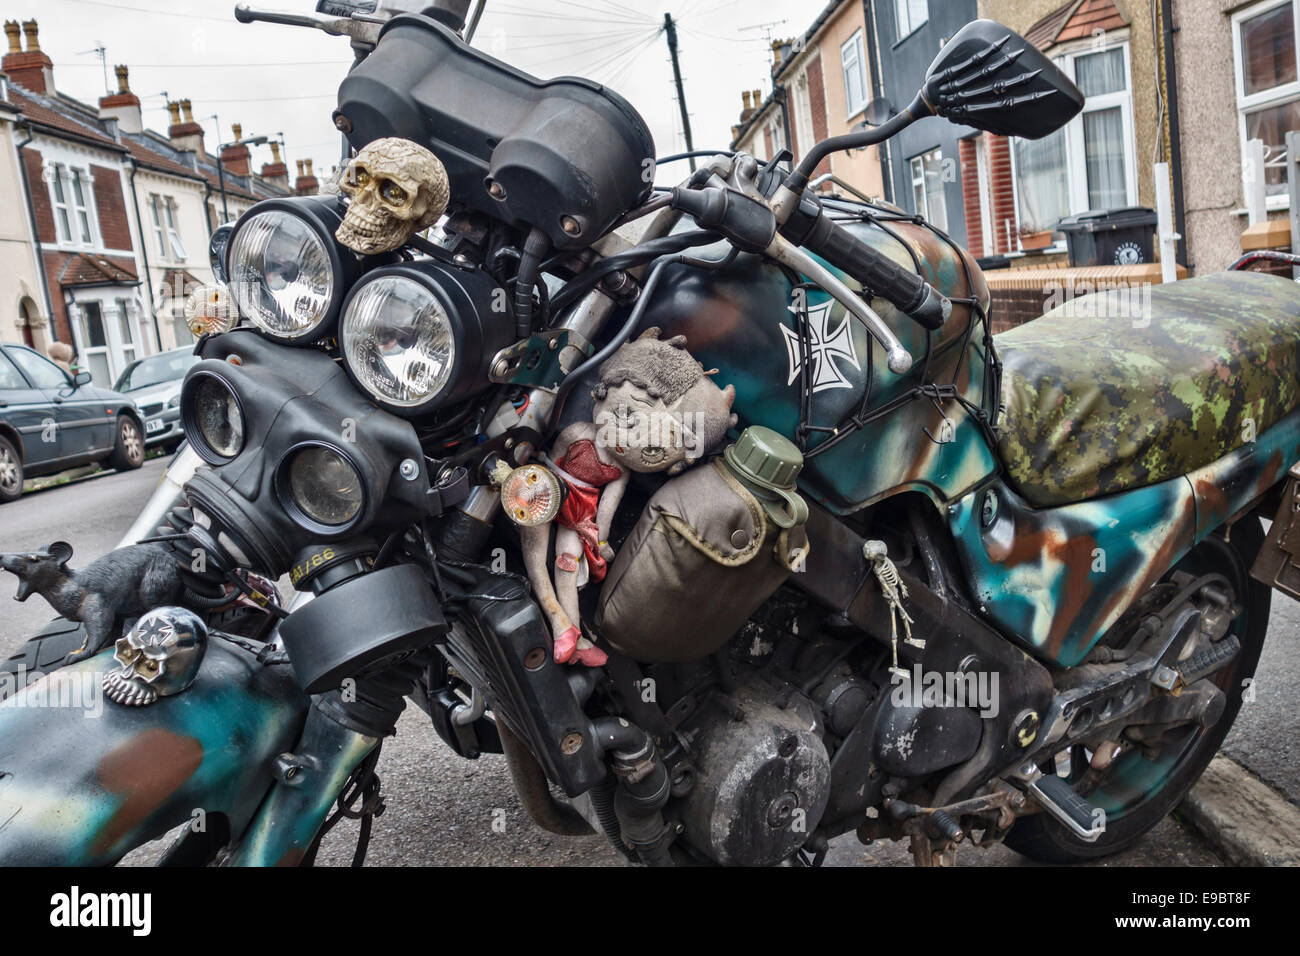 Una motocicletta decorata per Halloween con teschi, scheletri, ratti, mascherine e persino una bambola Betty Boop (Regno Unito) Foto Stock